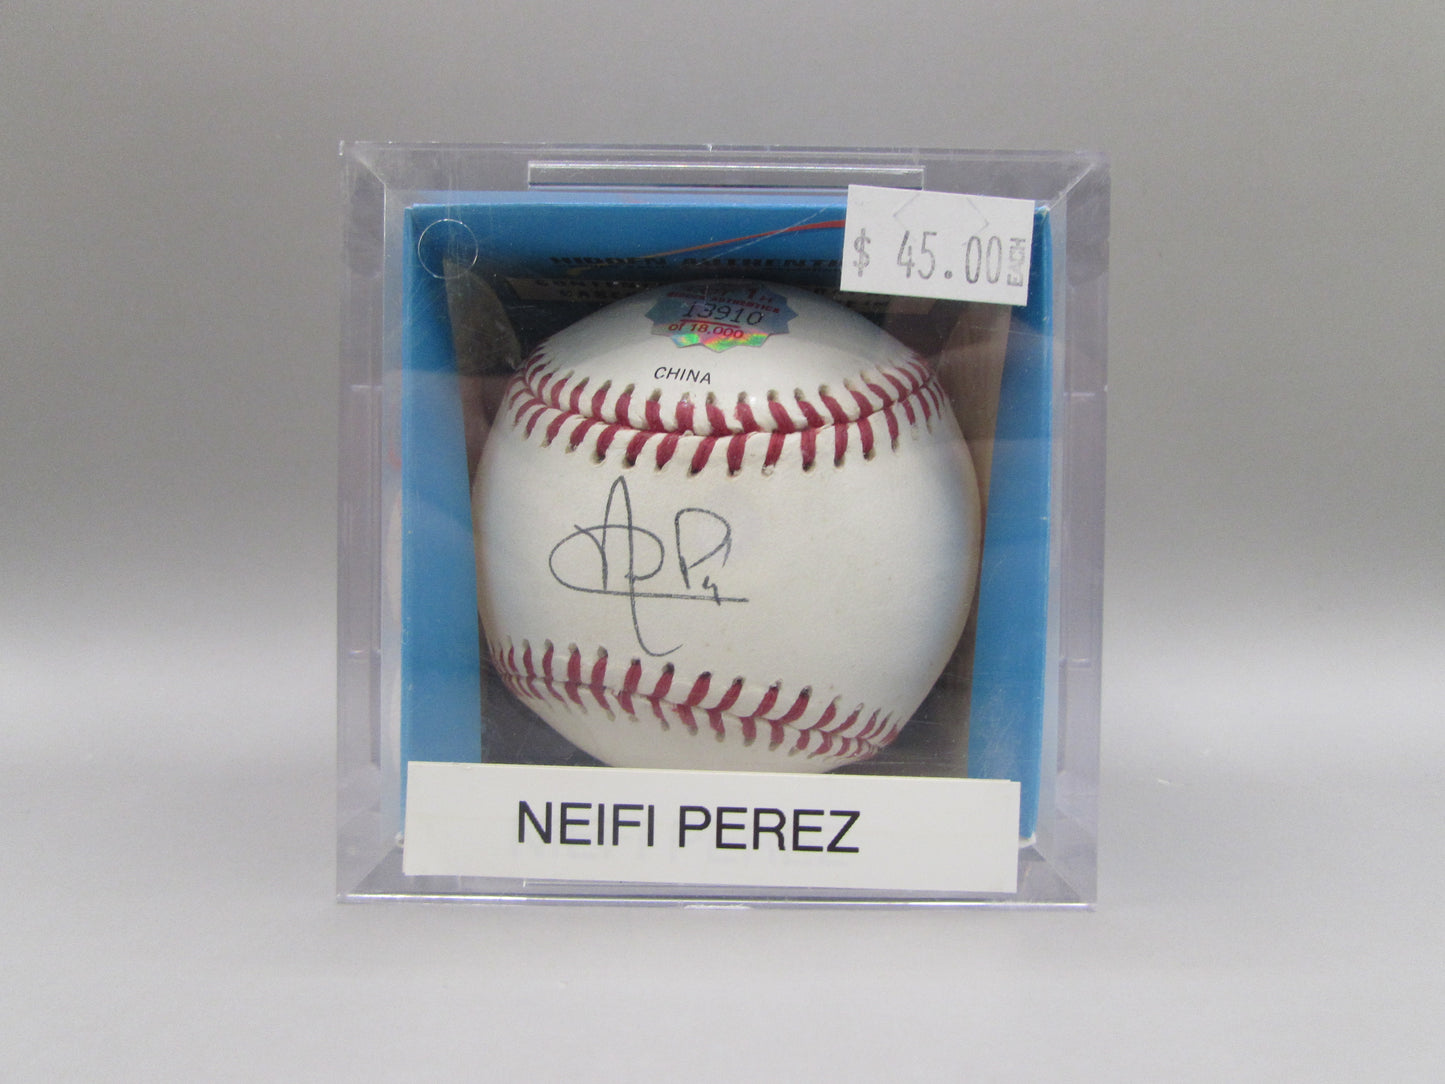 Neifi Perez signed baseball